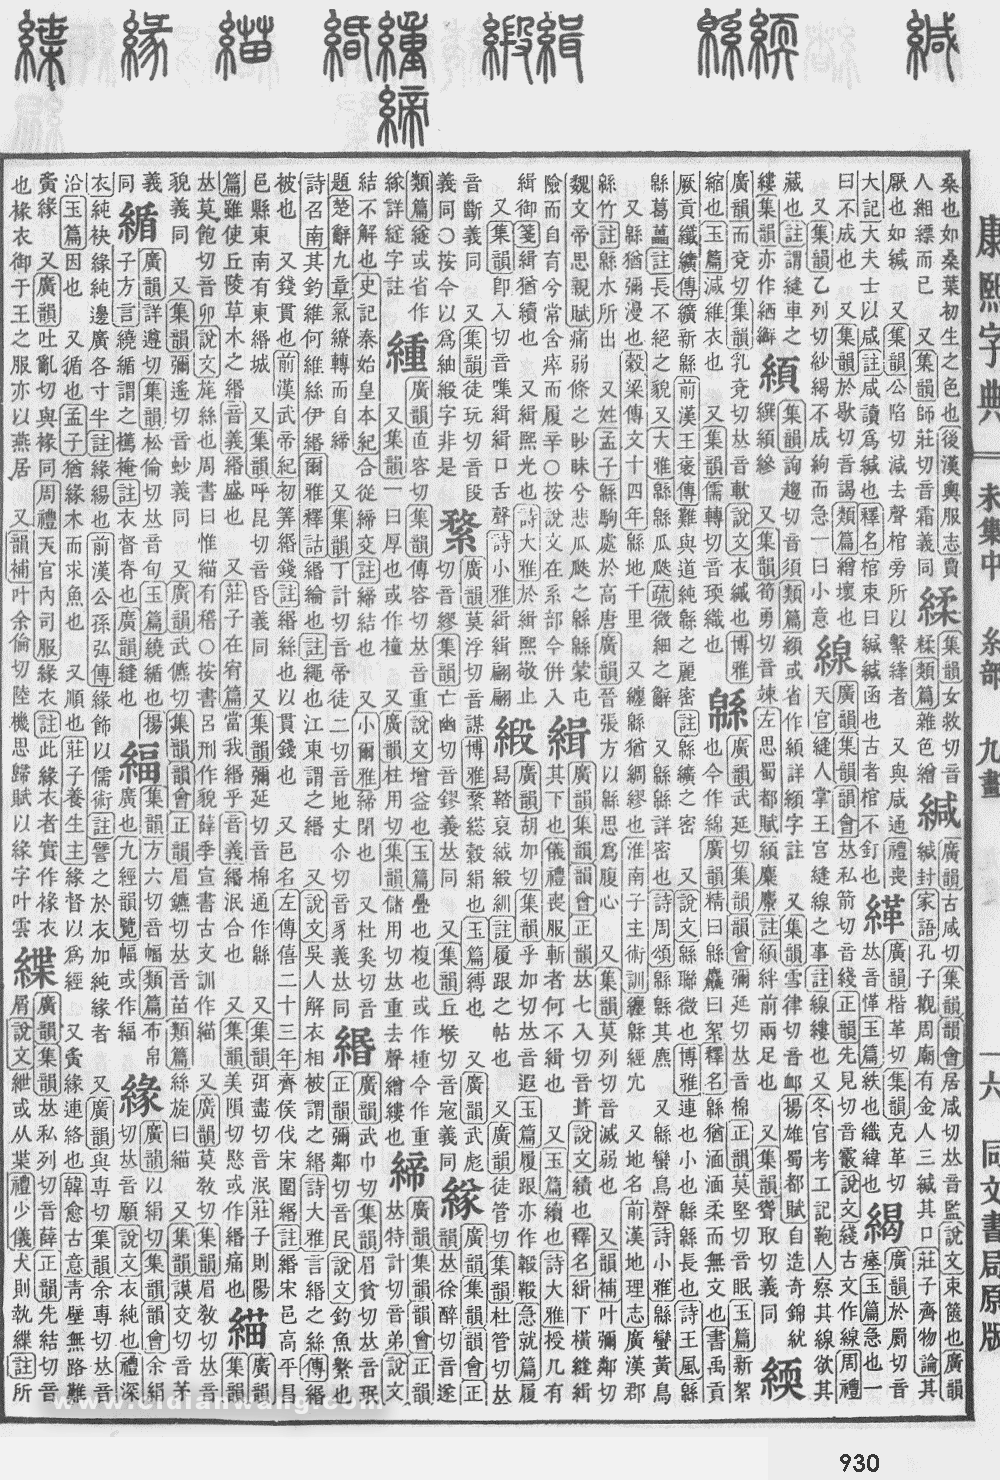 康熙字典掃描版第930頁